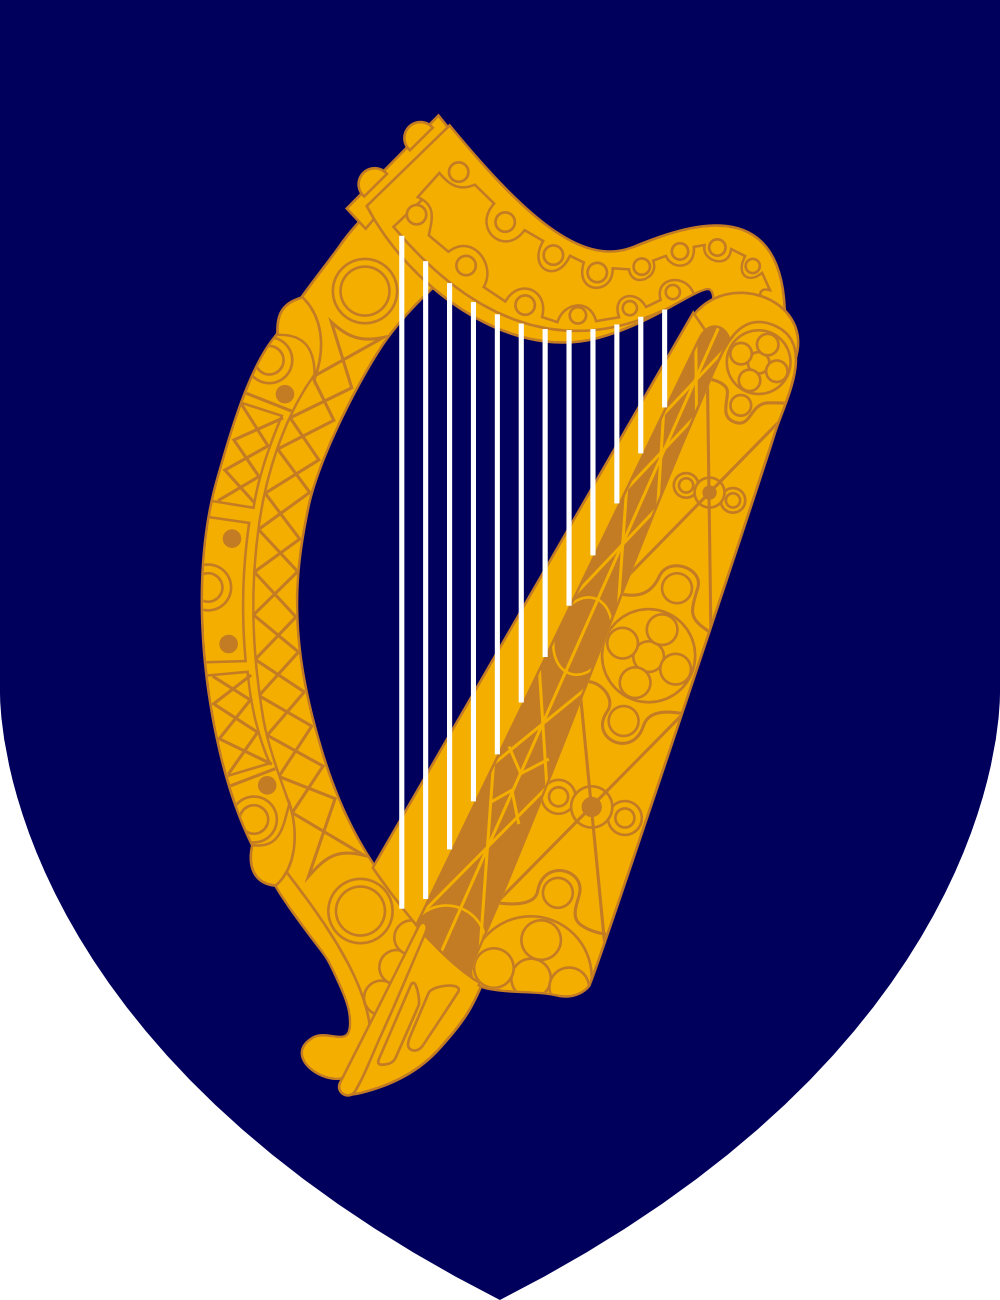 愛爾蘭國徽